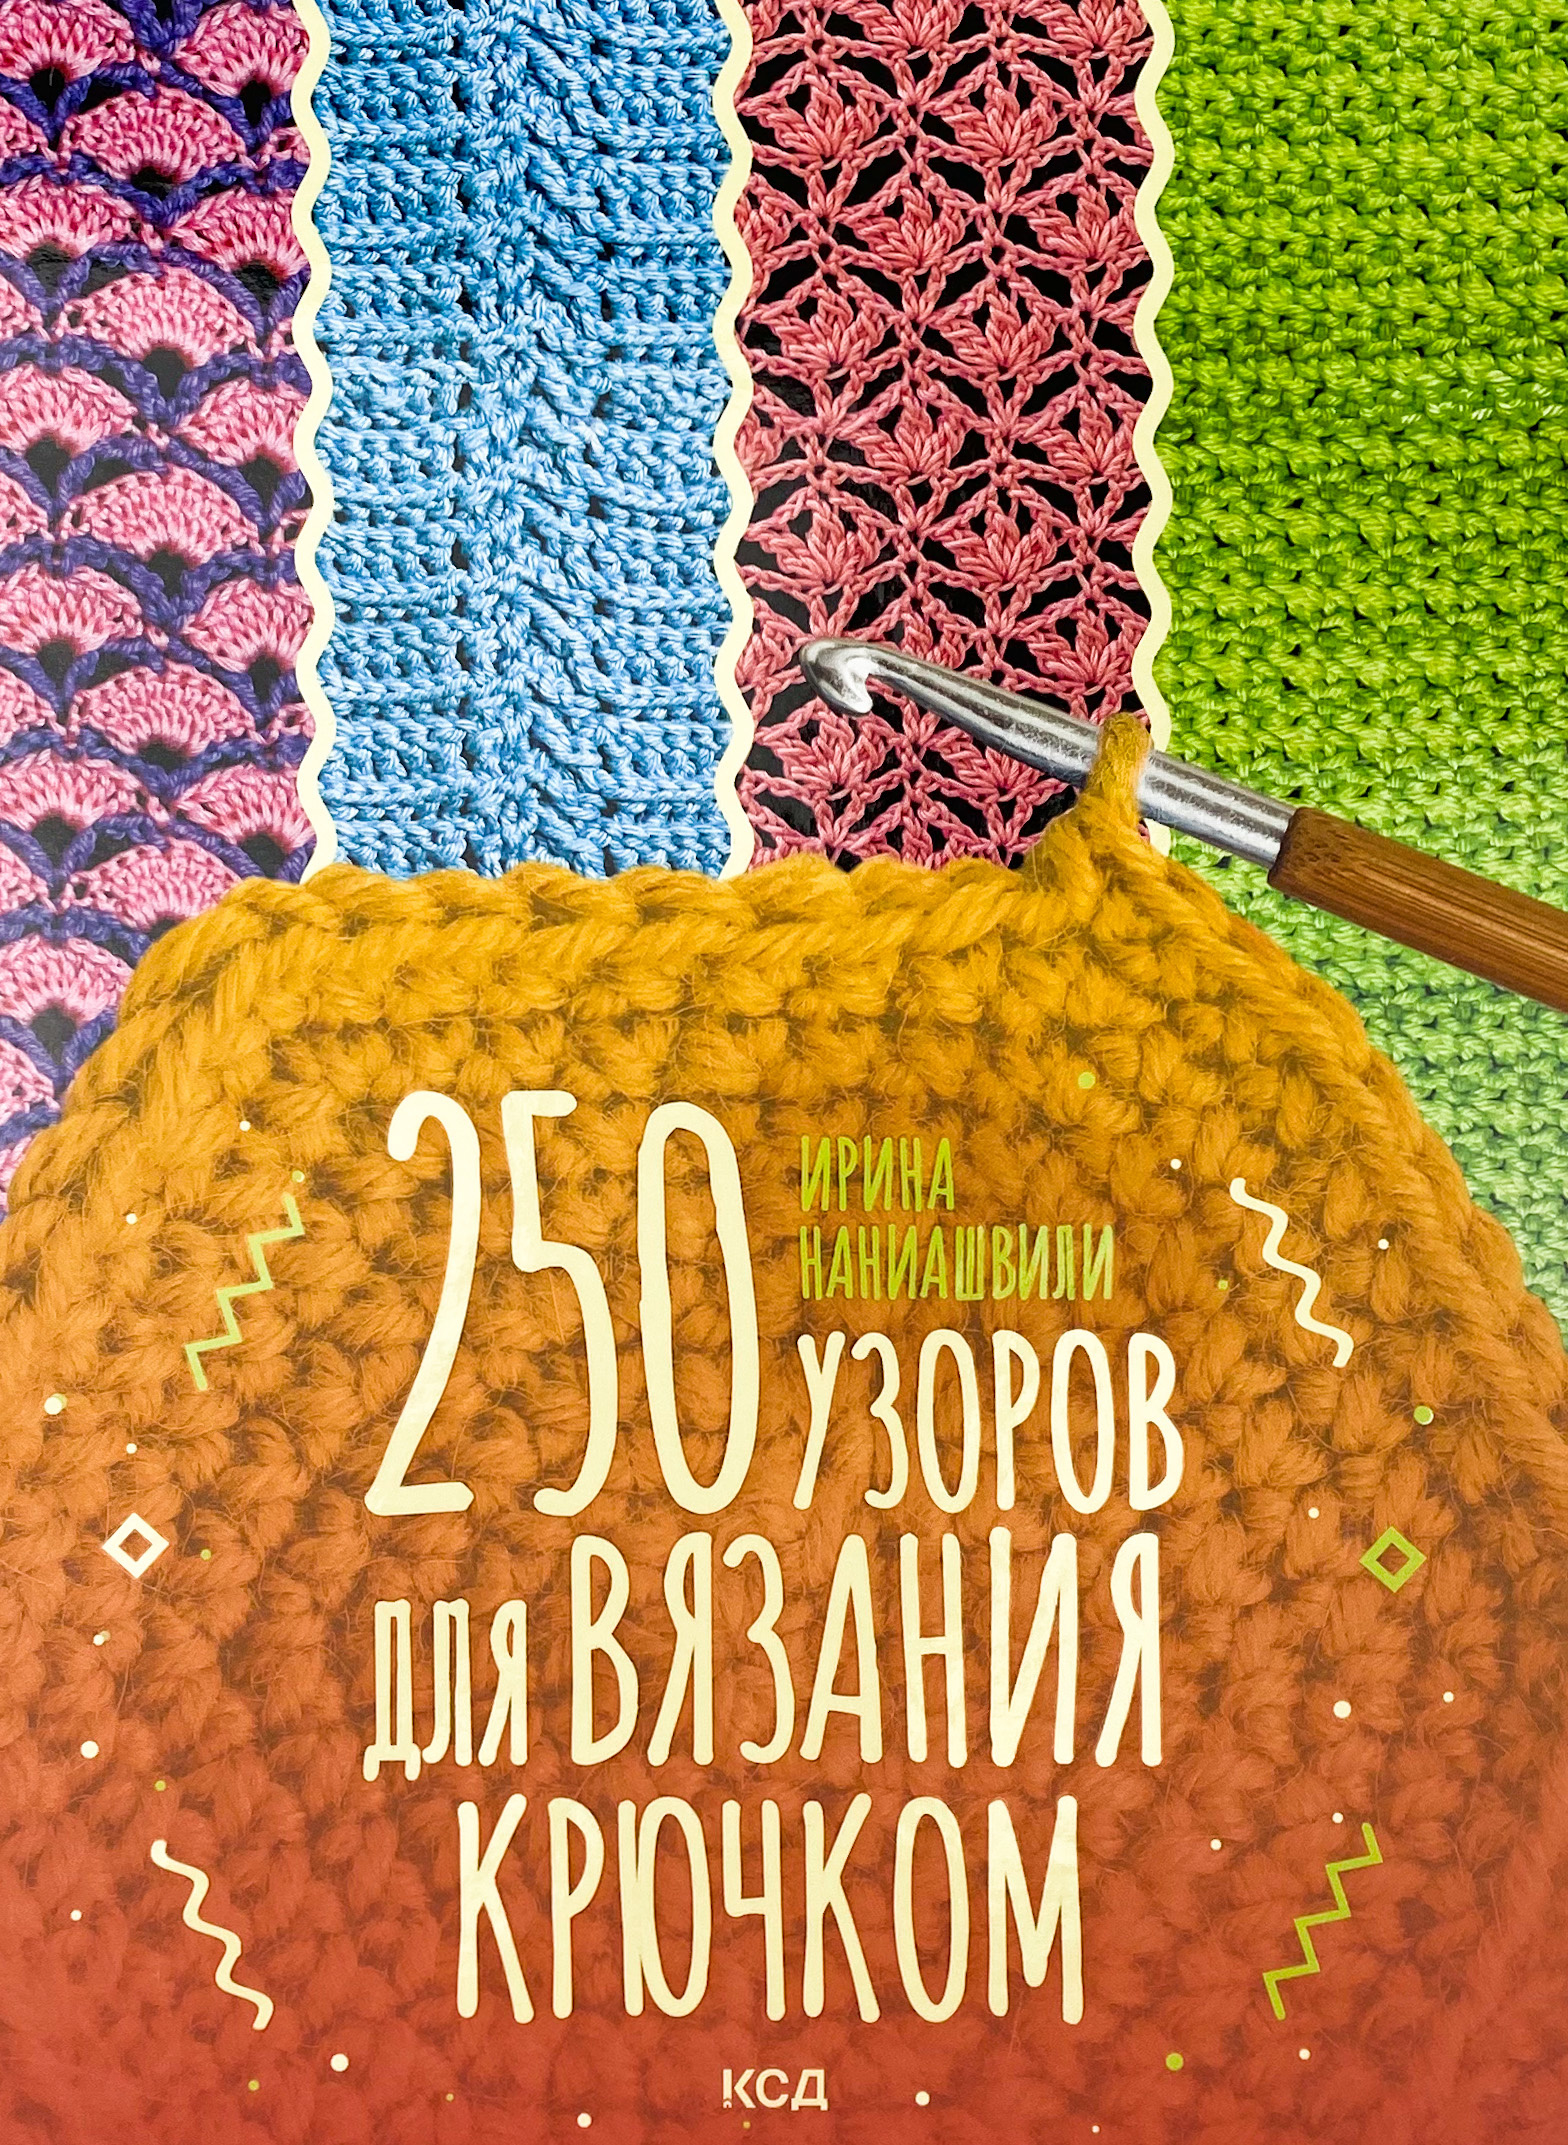 250 узоров для вязания крючком